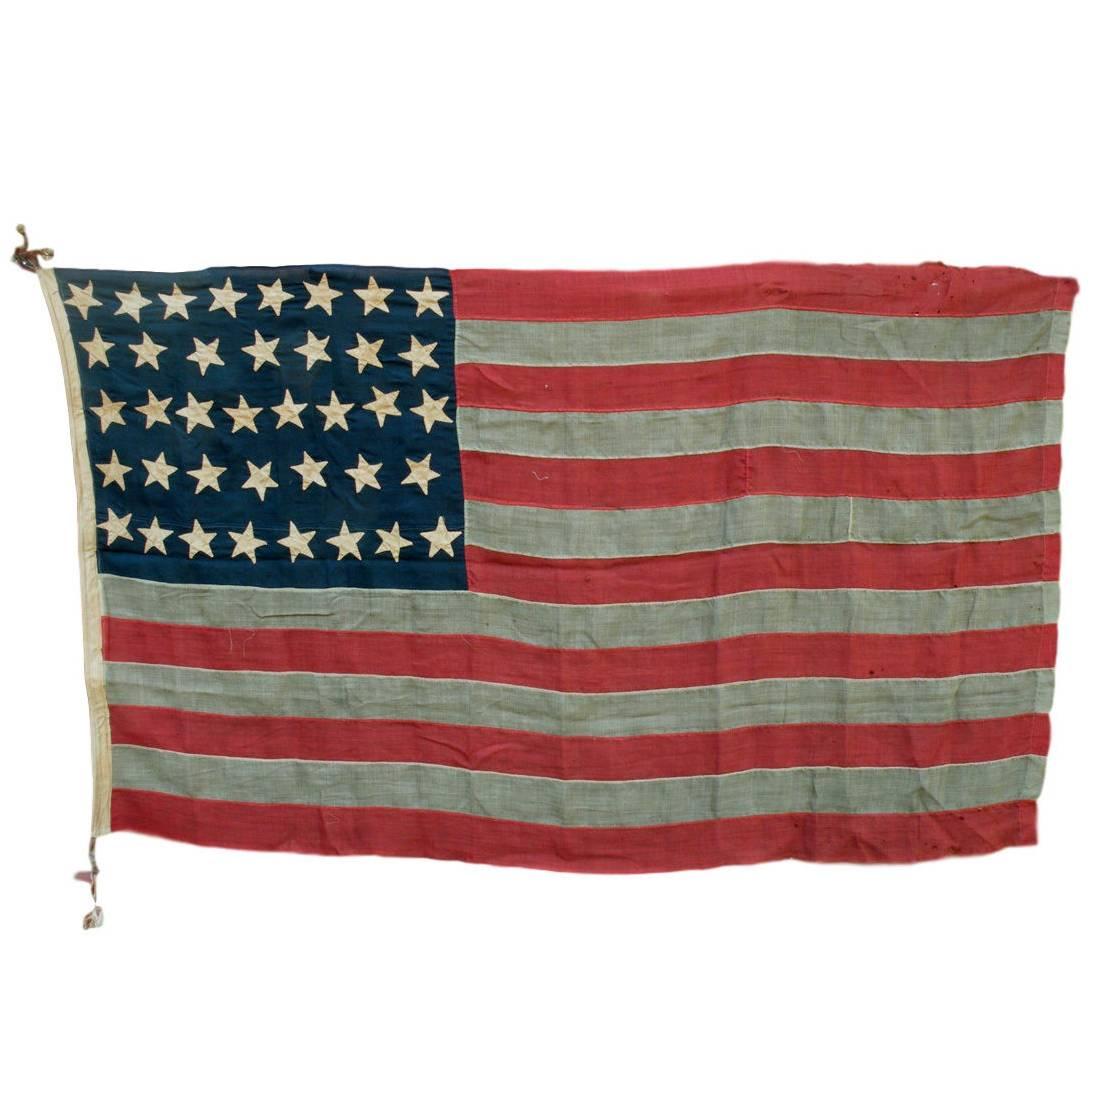 38-Star "Centennial" American Flag, circa 1876